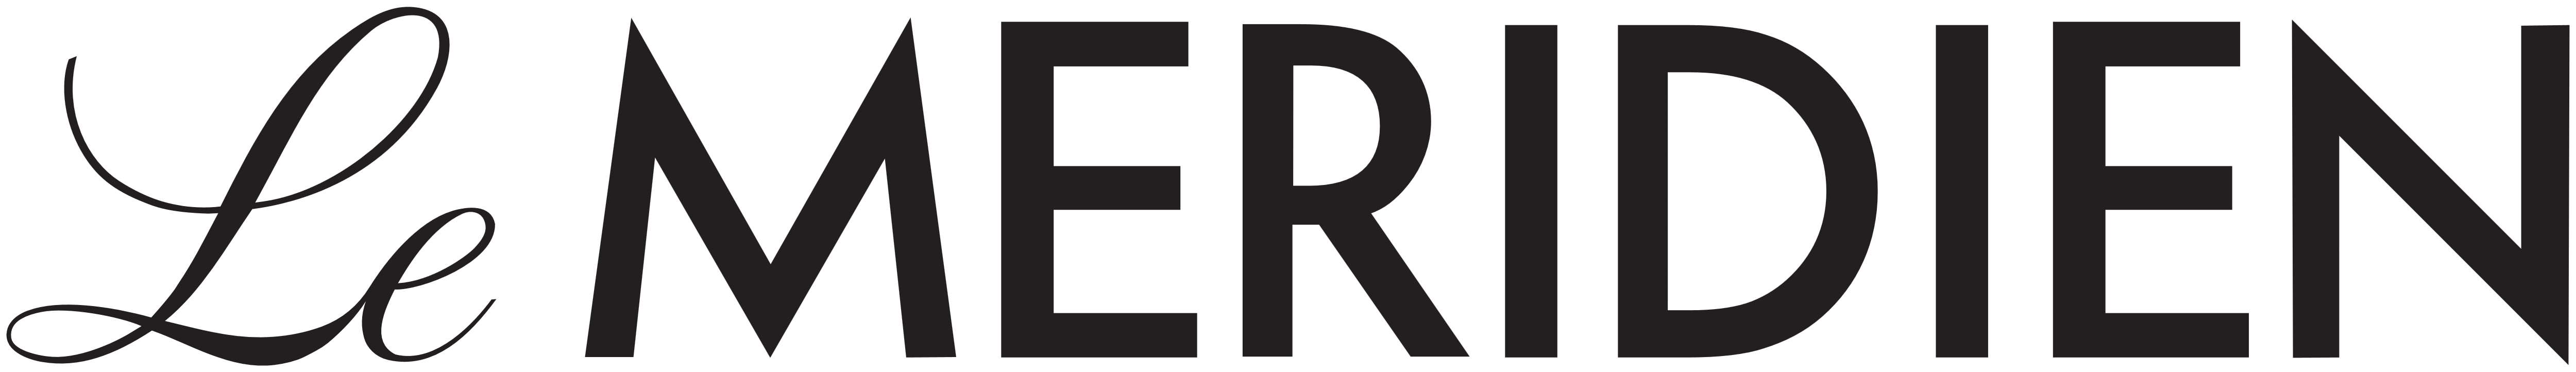 Le Meridien Brand Logo